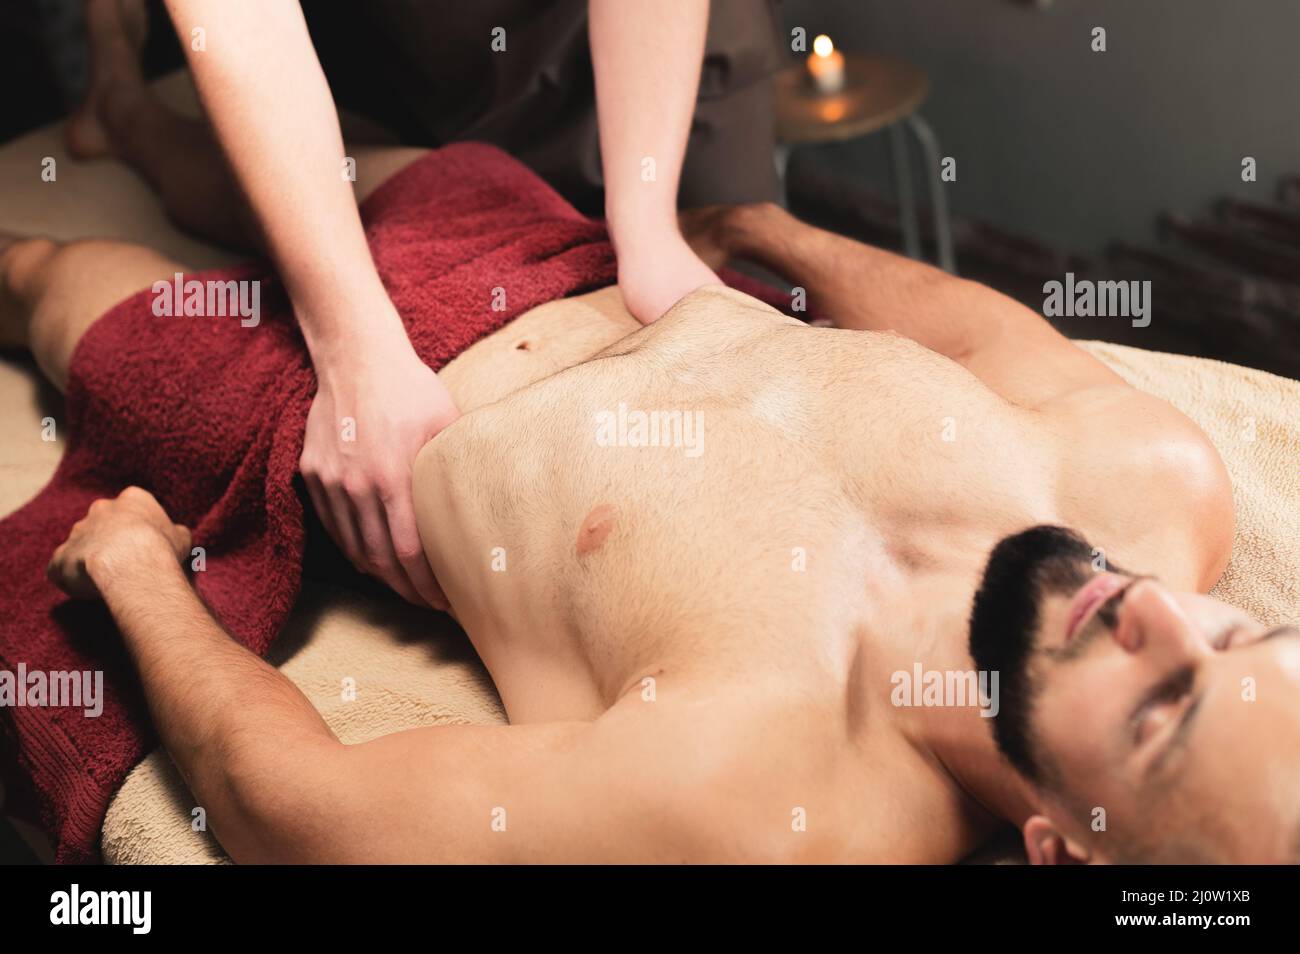 Der männliche Masseur massiert das Thoraxdiaphragma eines muskulösen männlichen Athleten in einem Massageraum mit dunkler Beleuchtung Stockfoto